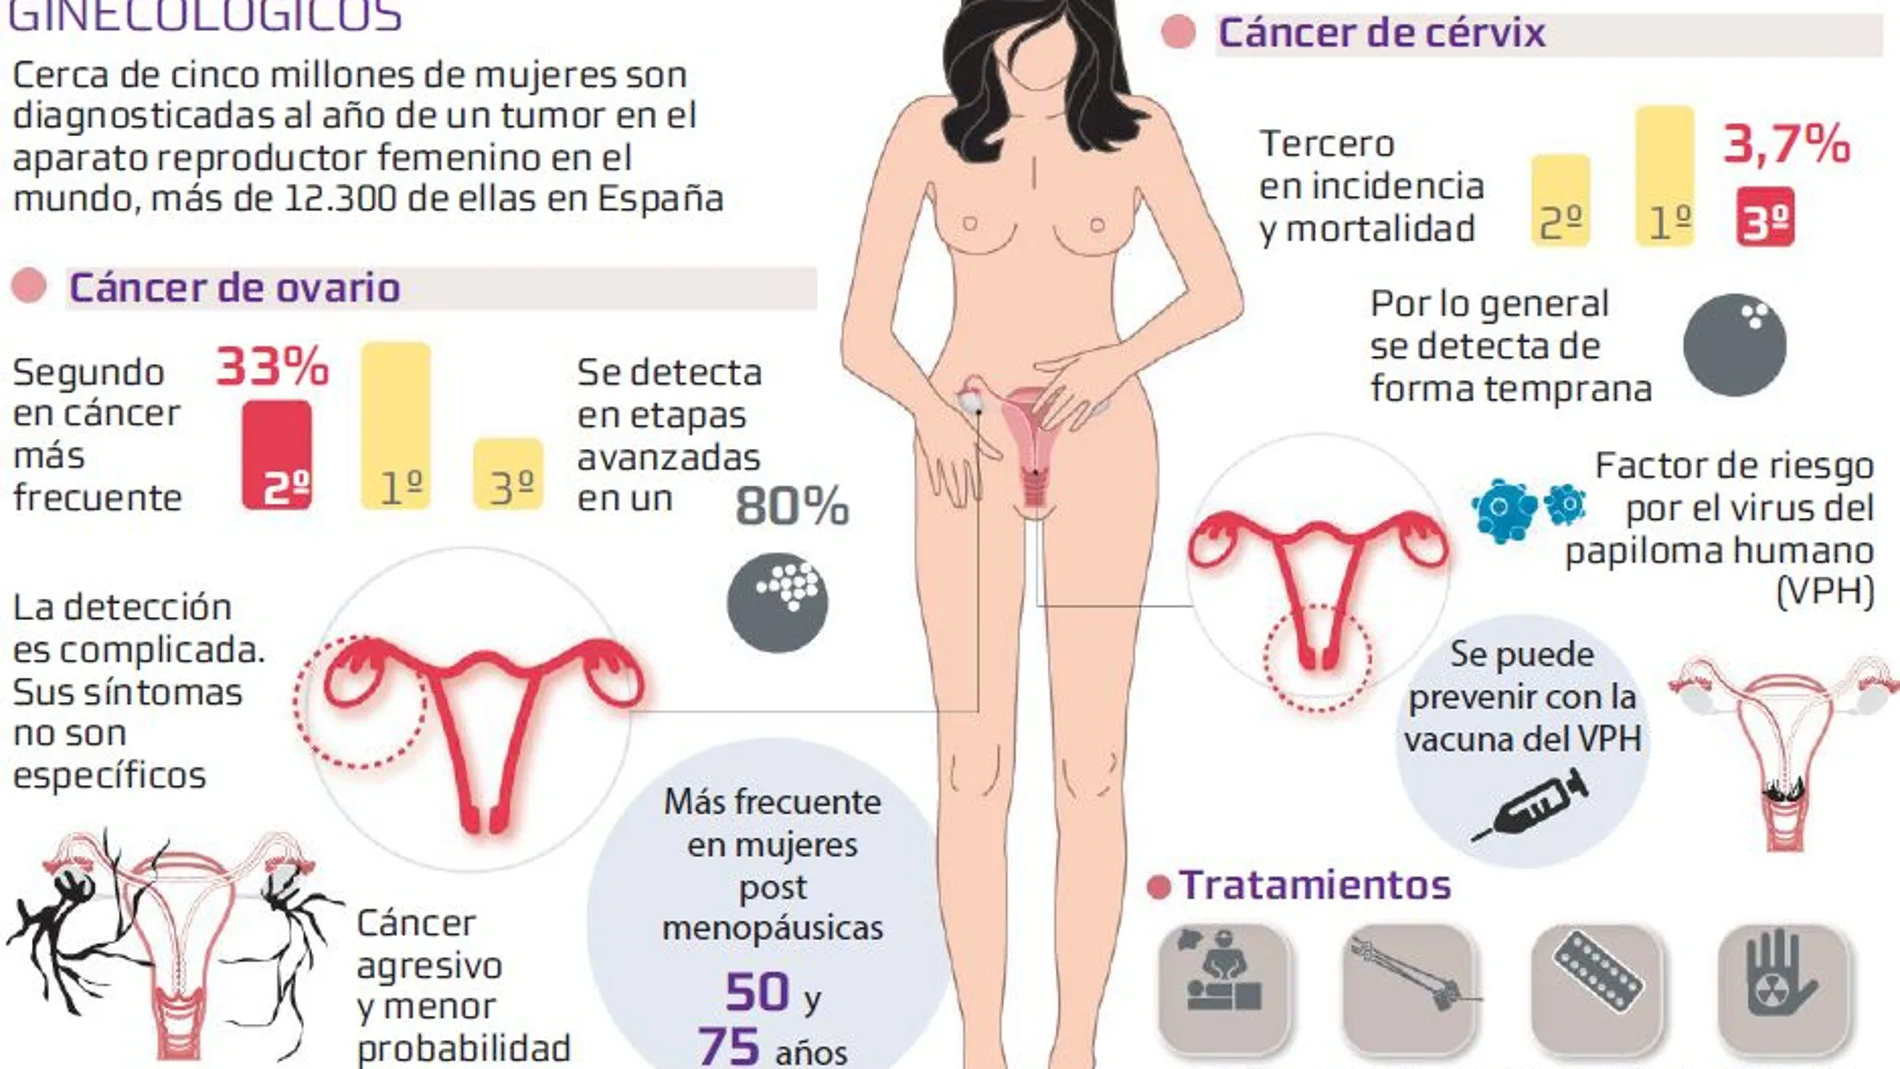 La prevención reduce un 70% el cáncer de cérvix